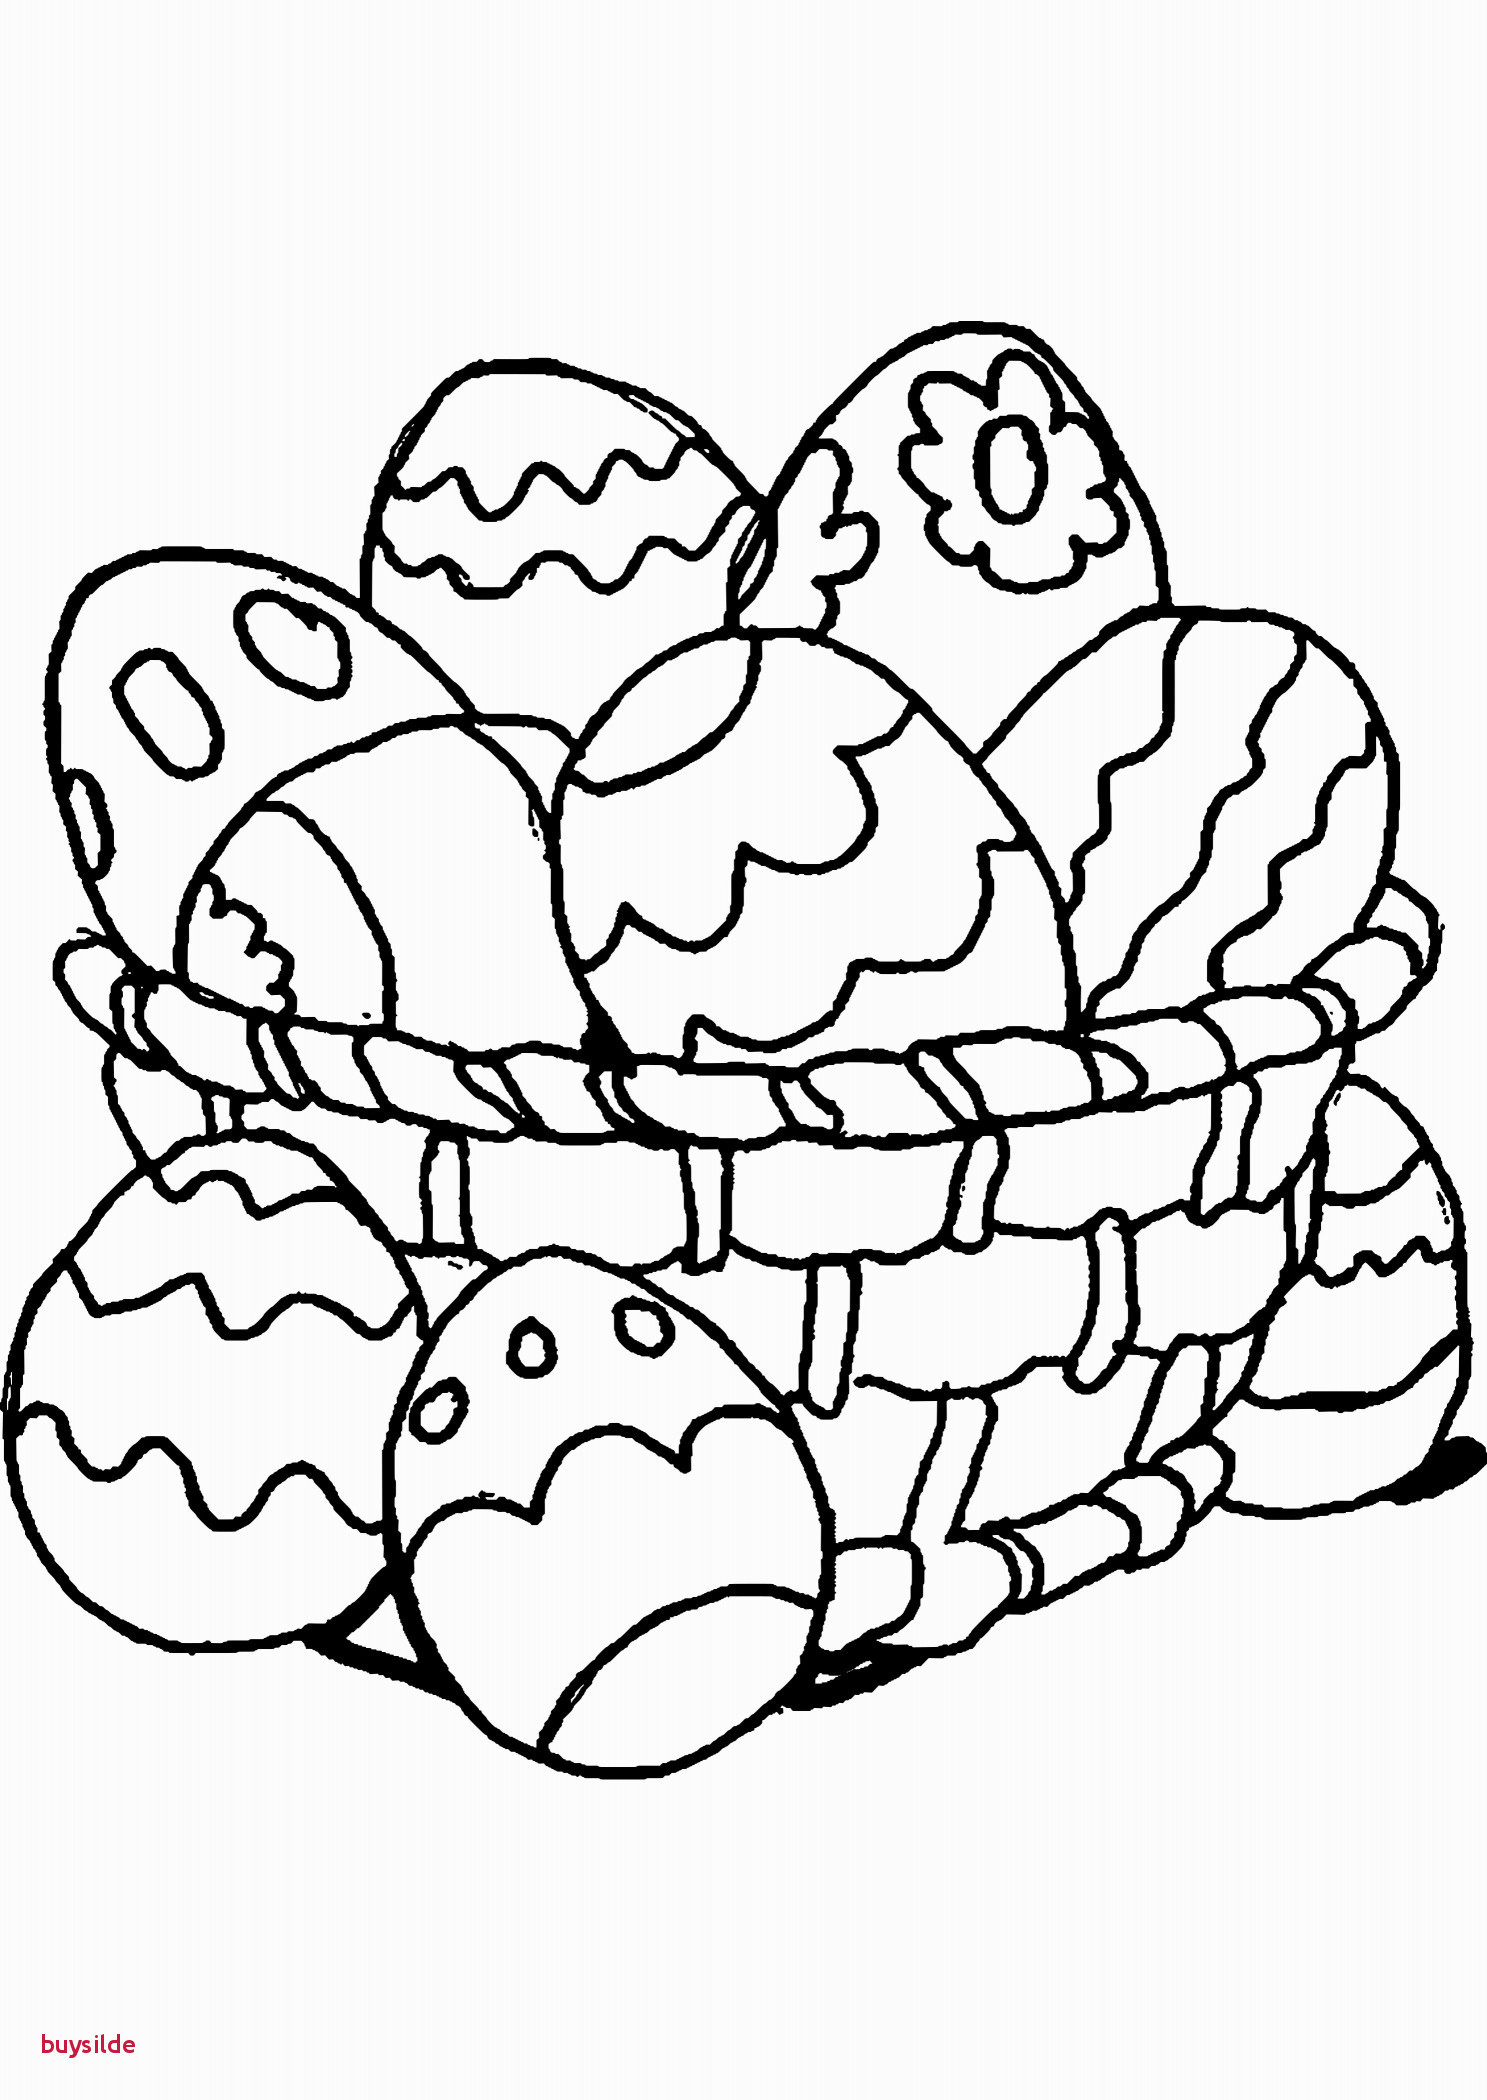 Osternest Ausmalbilder
 Frohe Ostern Ausmalbilder 21 Inspirierend Bild Bezieht